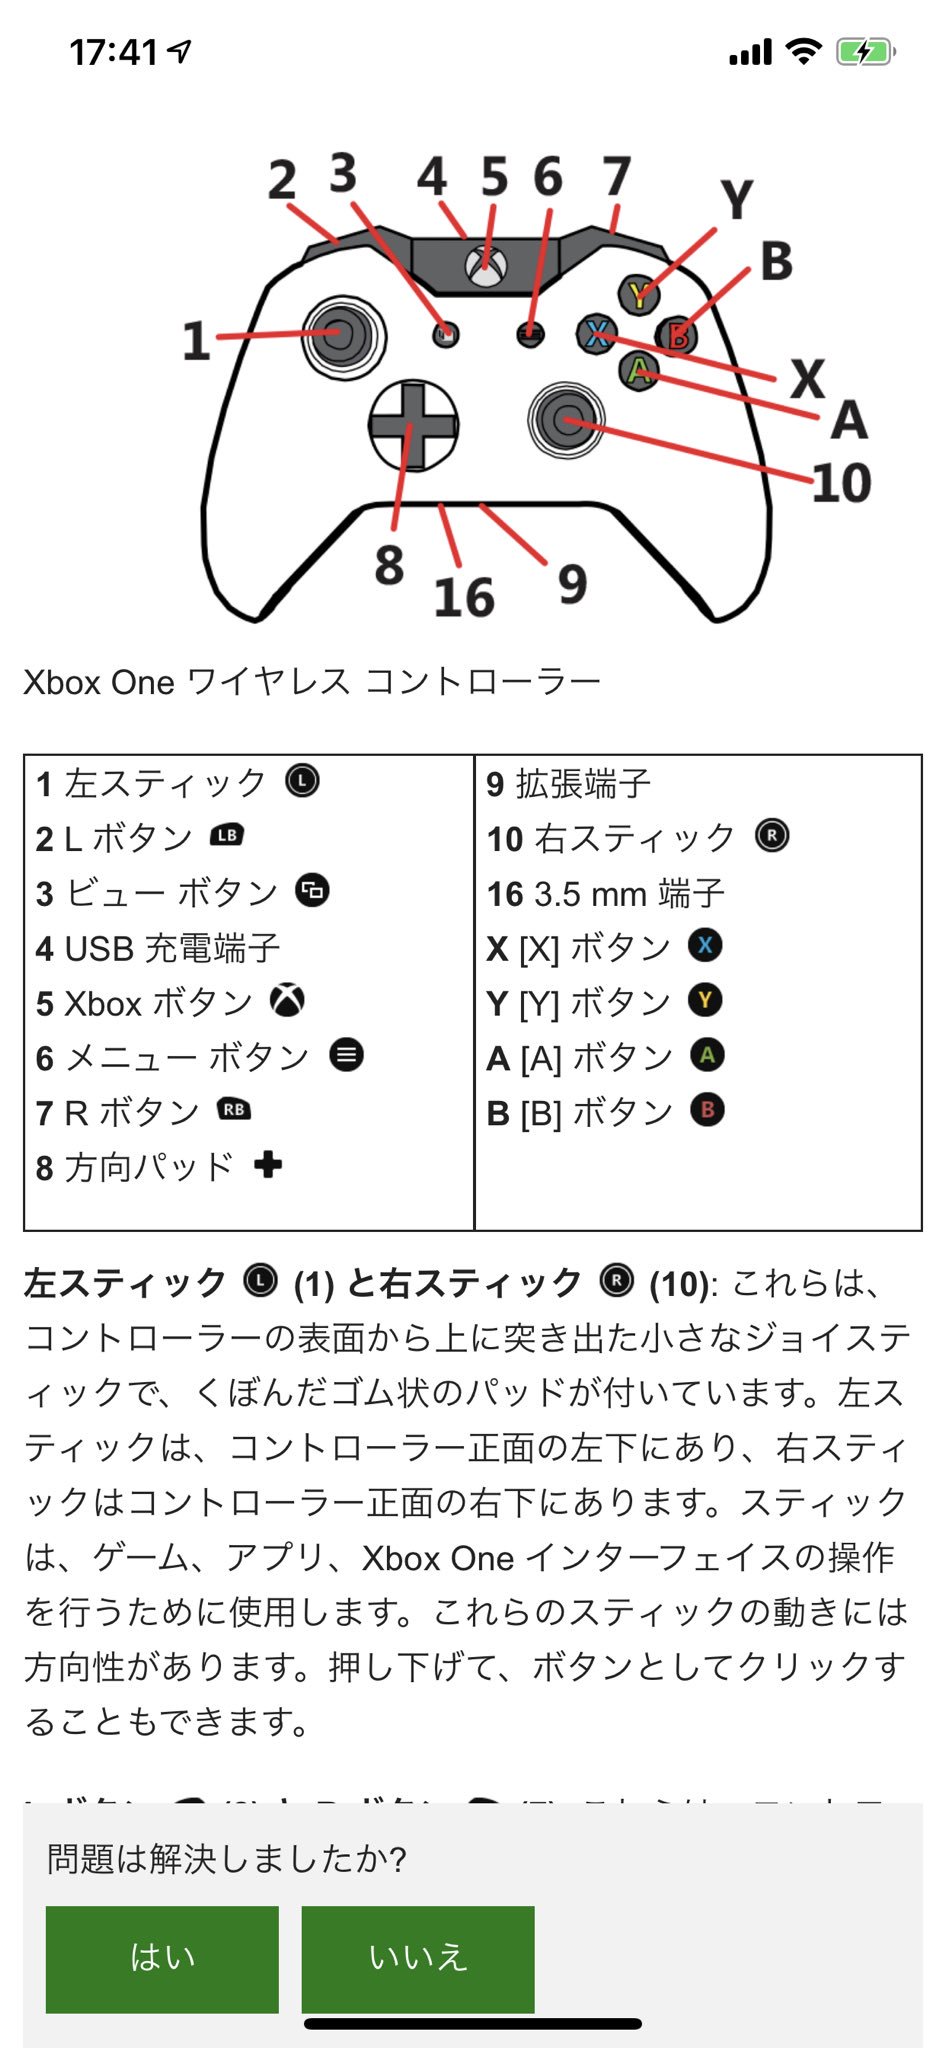 ট ইট র 松井ムネタツ Xbox好きゲームライター あー いま調べたらいろいろわかった 僕も間違えてた Xbox 360コントローラー Rbボタン Xbox Oneコントローラー Rボタン でしたw